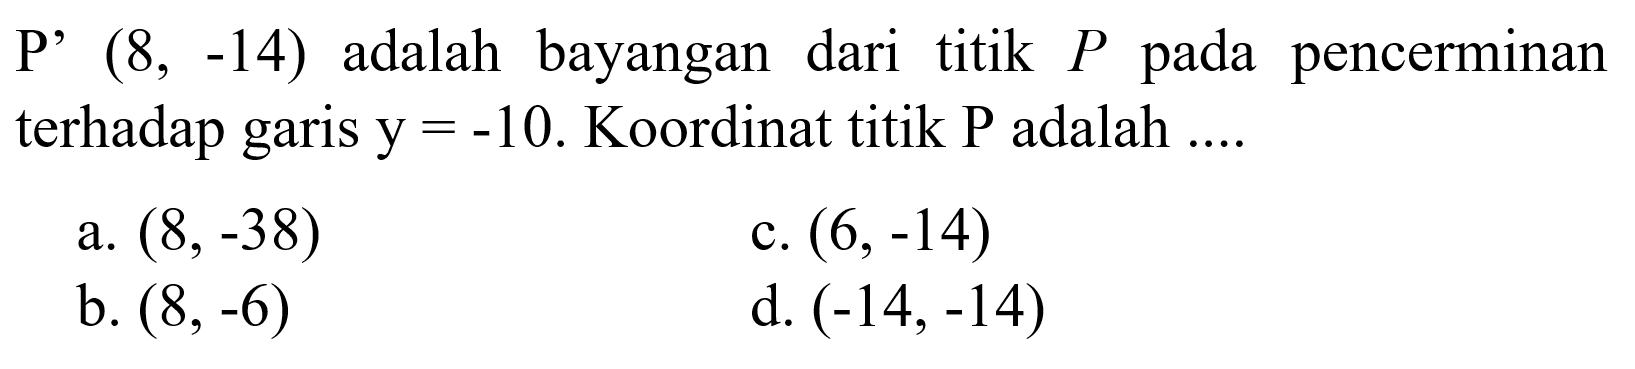 P' (8, -14) adalah bayangan dari titik P pada pencerminan terhadap garis y=-10. Koordinat titik P adalah ....